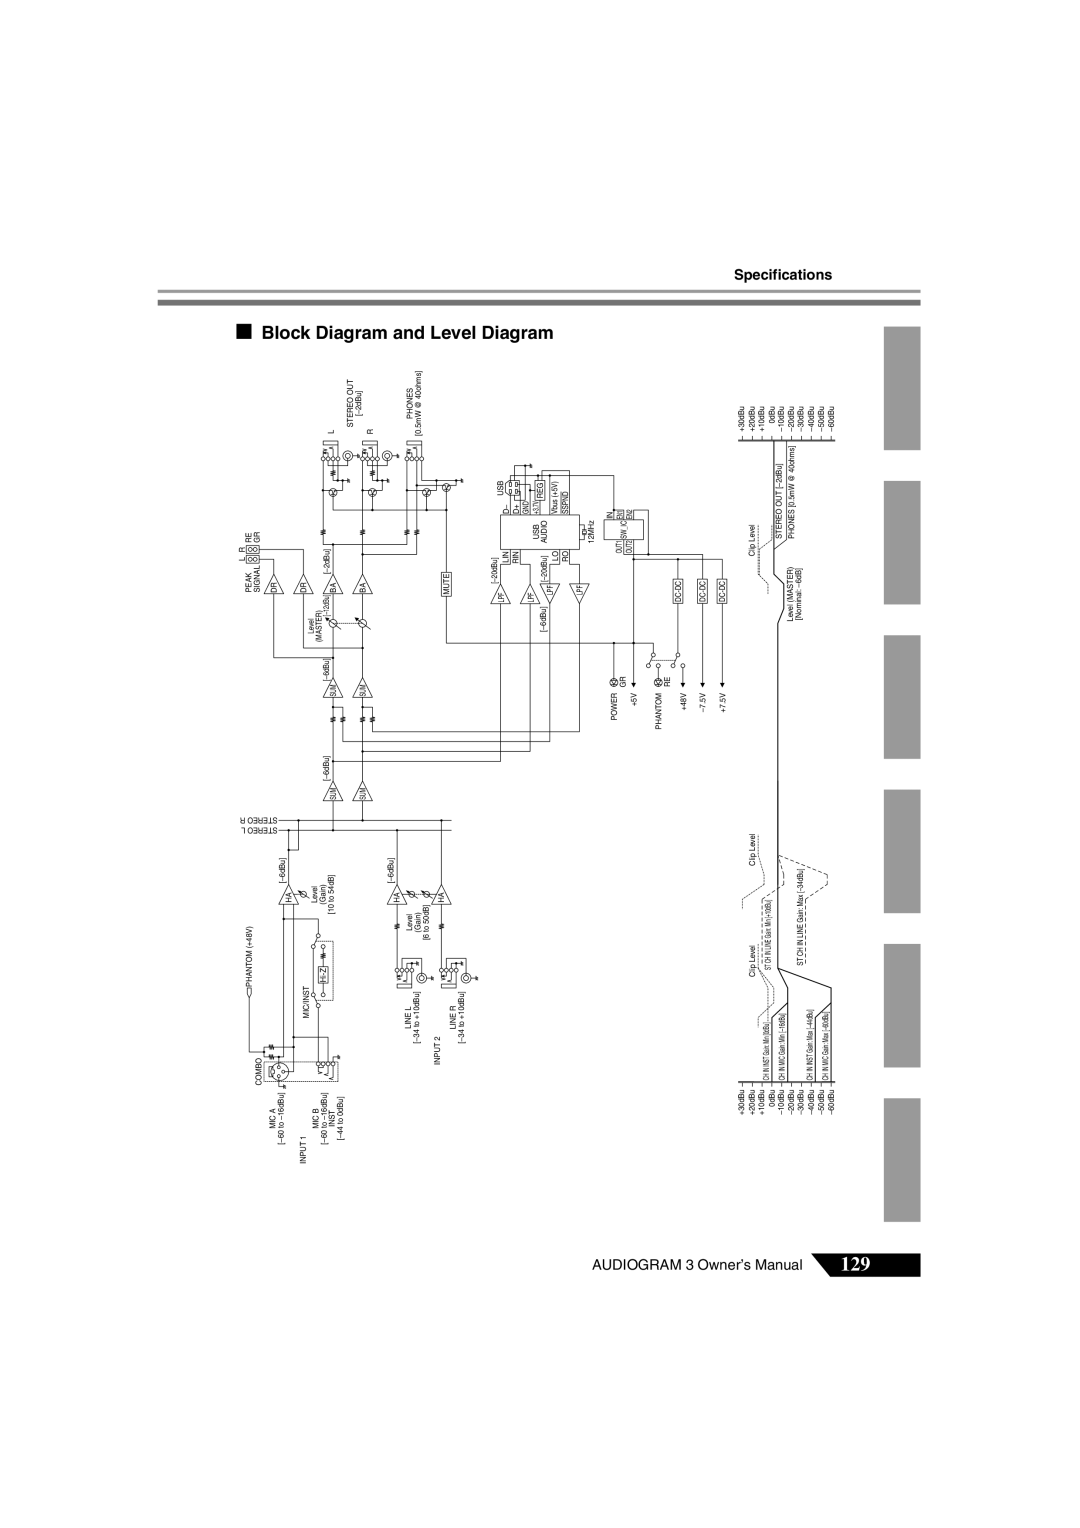 Yamaha Audiogram 3 owner manual Block Diagram and Level Diagram 